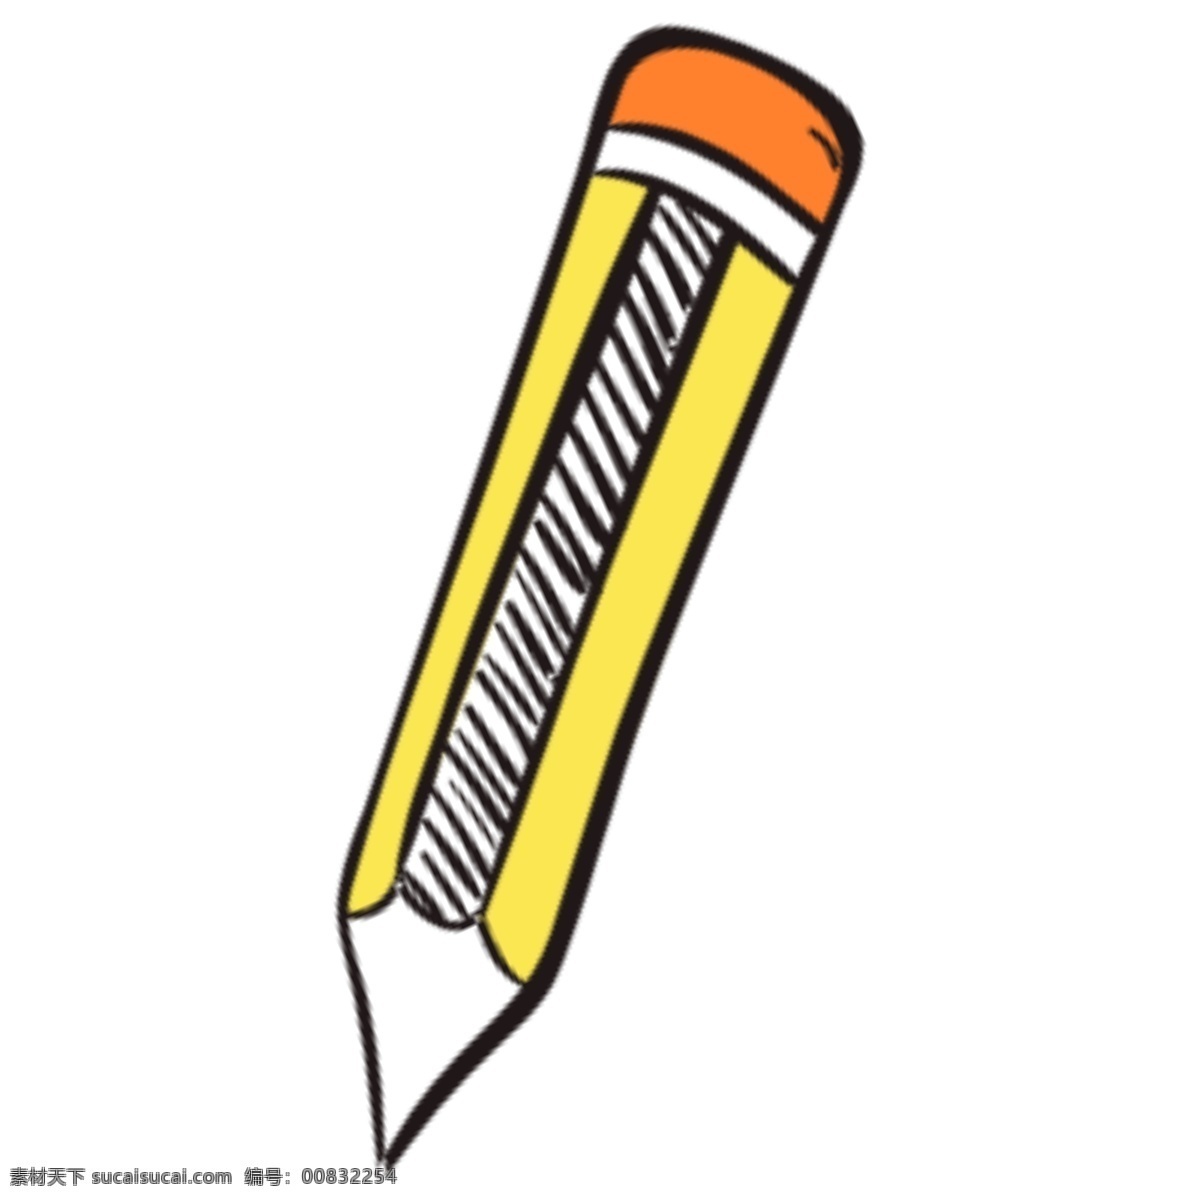 黄色 黑色 白色 橙色 橘黄色 铅笔 手写 橡皮 笔 学生 学习用品 学习 办公 手绘 简约 简笔画